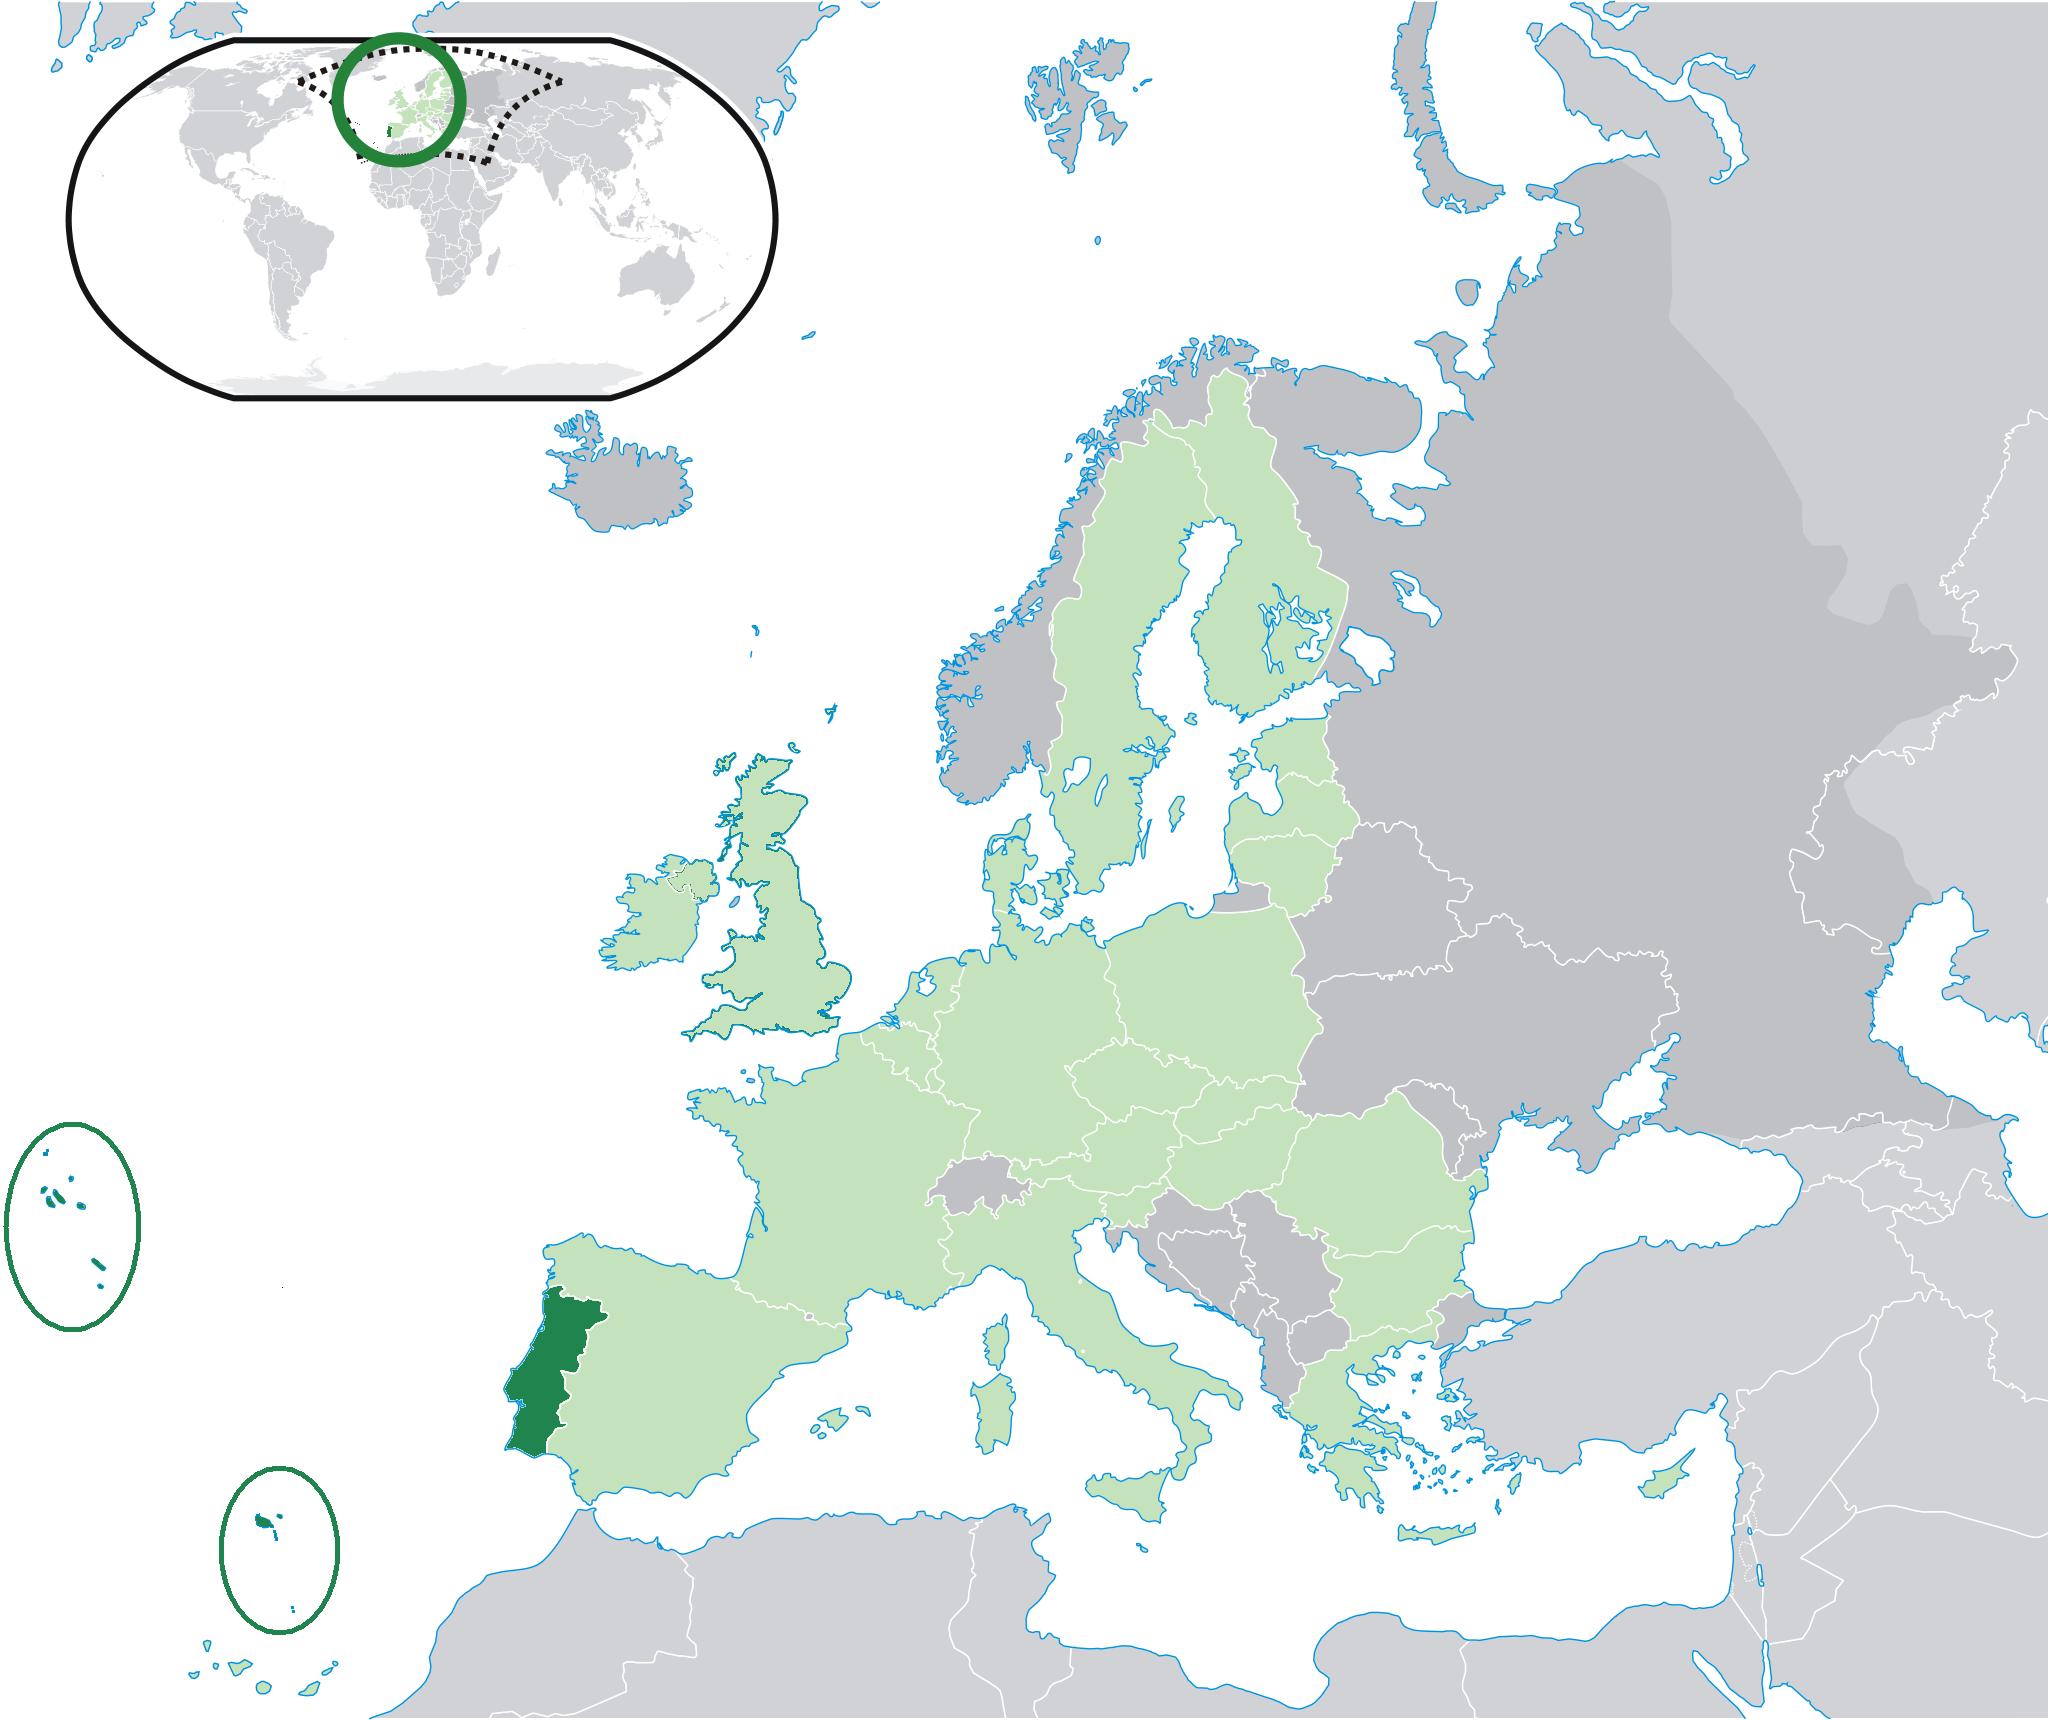 Mapa-múndi detalhado com mapa ampliado fixado de portugal e dos